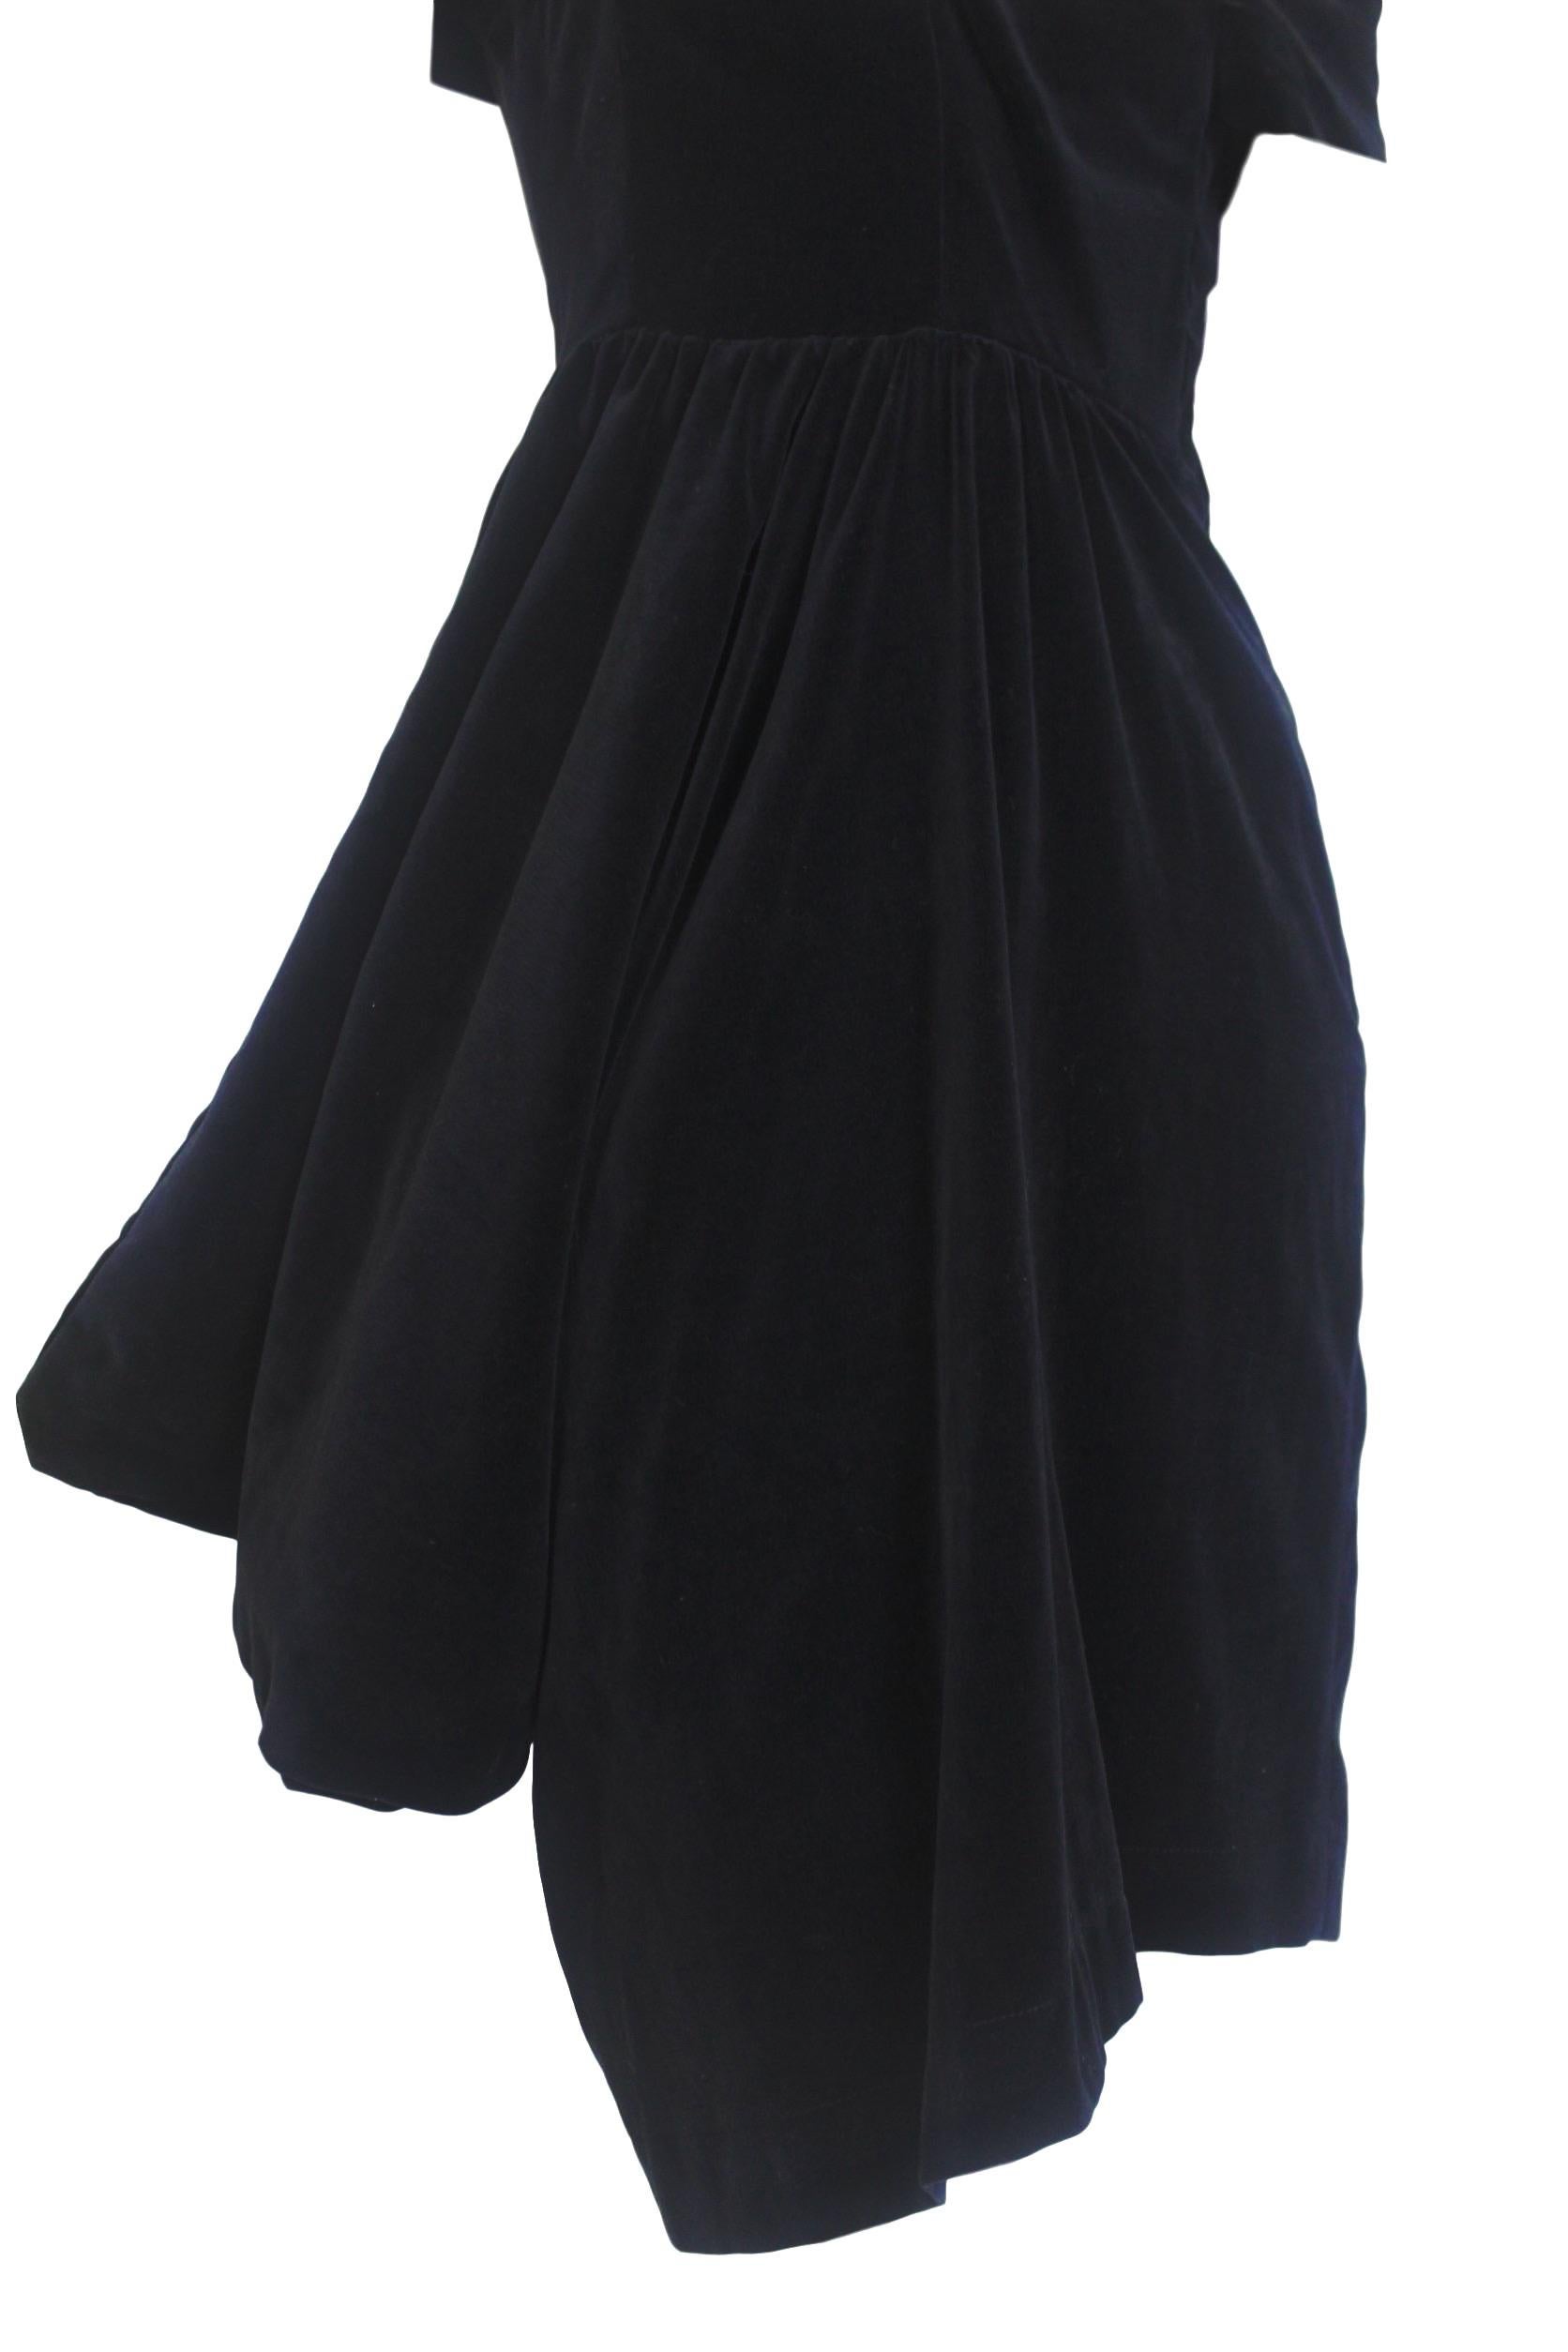 Comme des Garcons Noir Vintage  SS 1989 Dior Esque Cotton Velvet Dress  For Sale 7